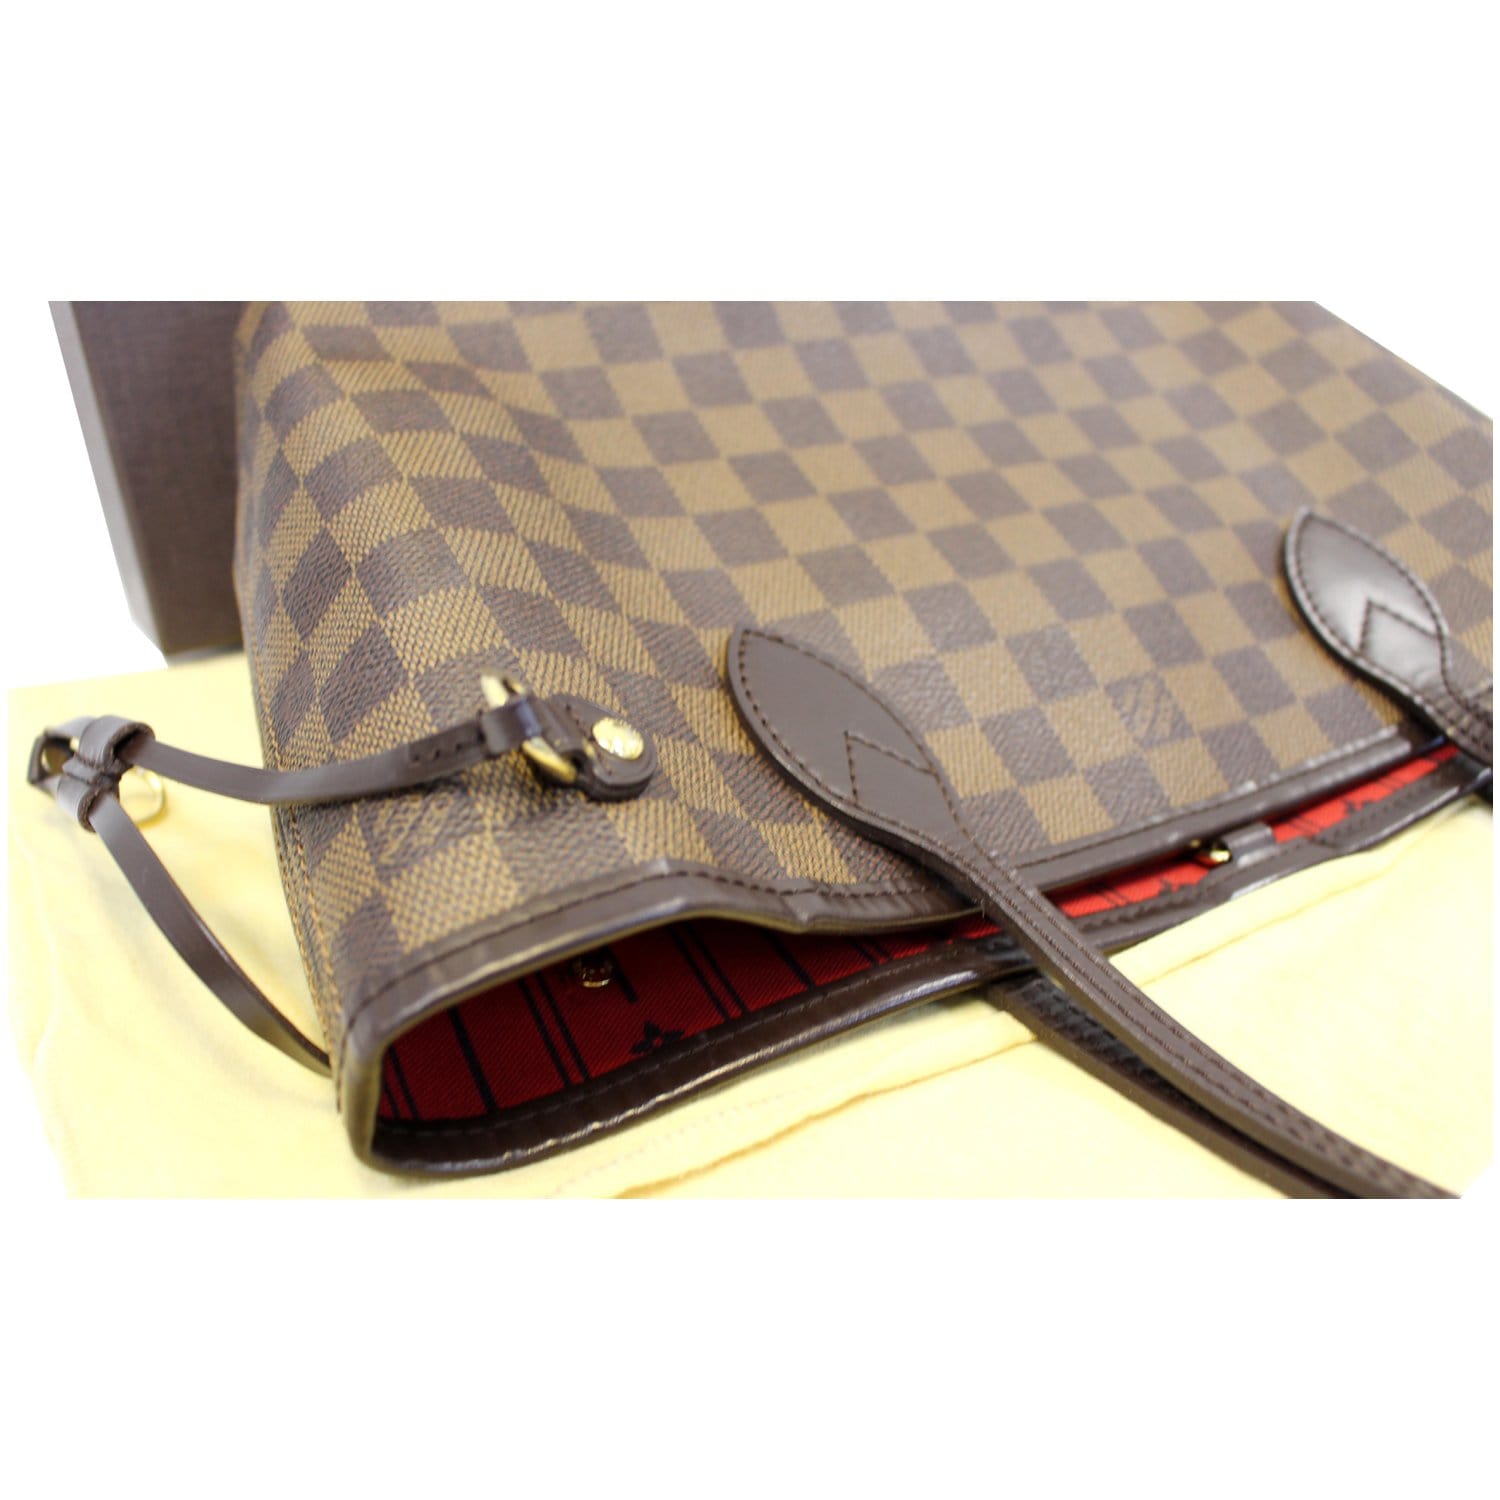 Louis Vuitton Neverfull PM Damier Ebene Shoulder Bag - THE PURSE